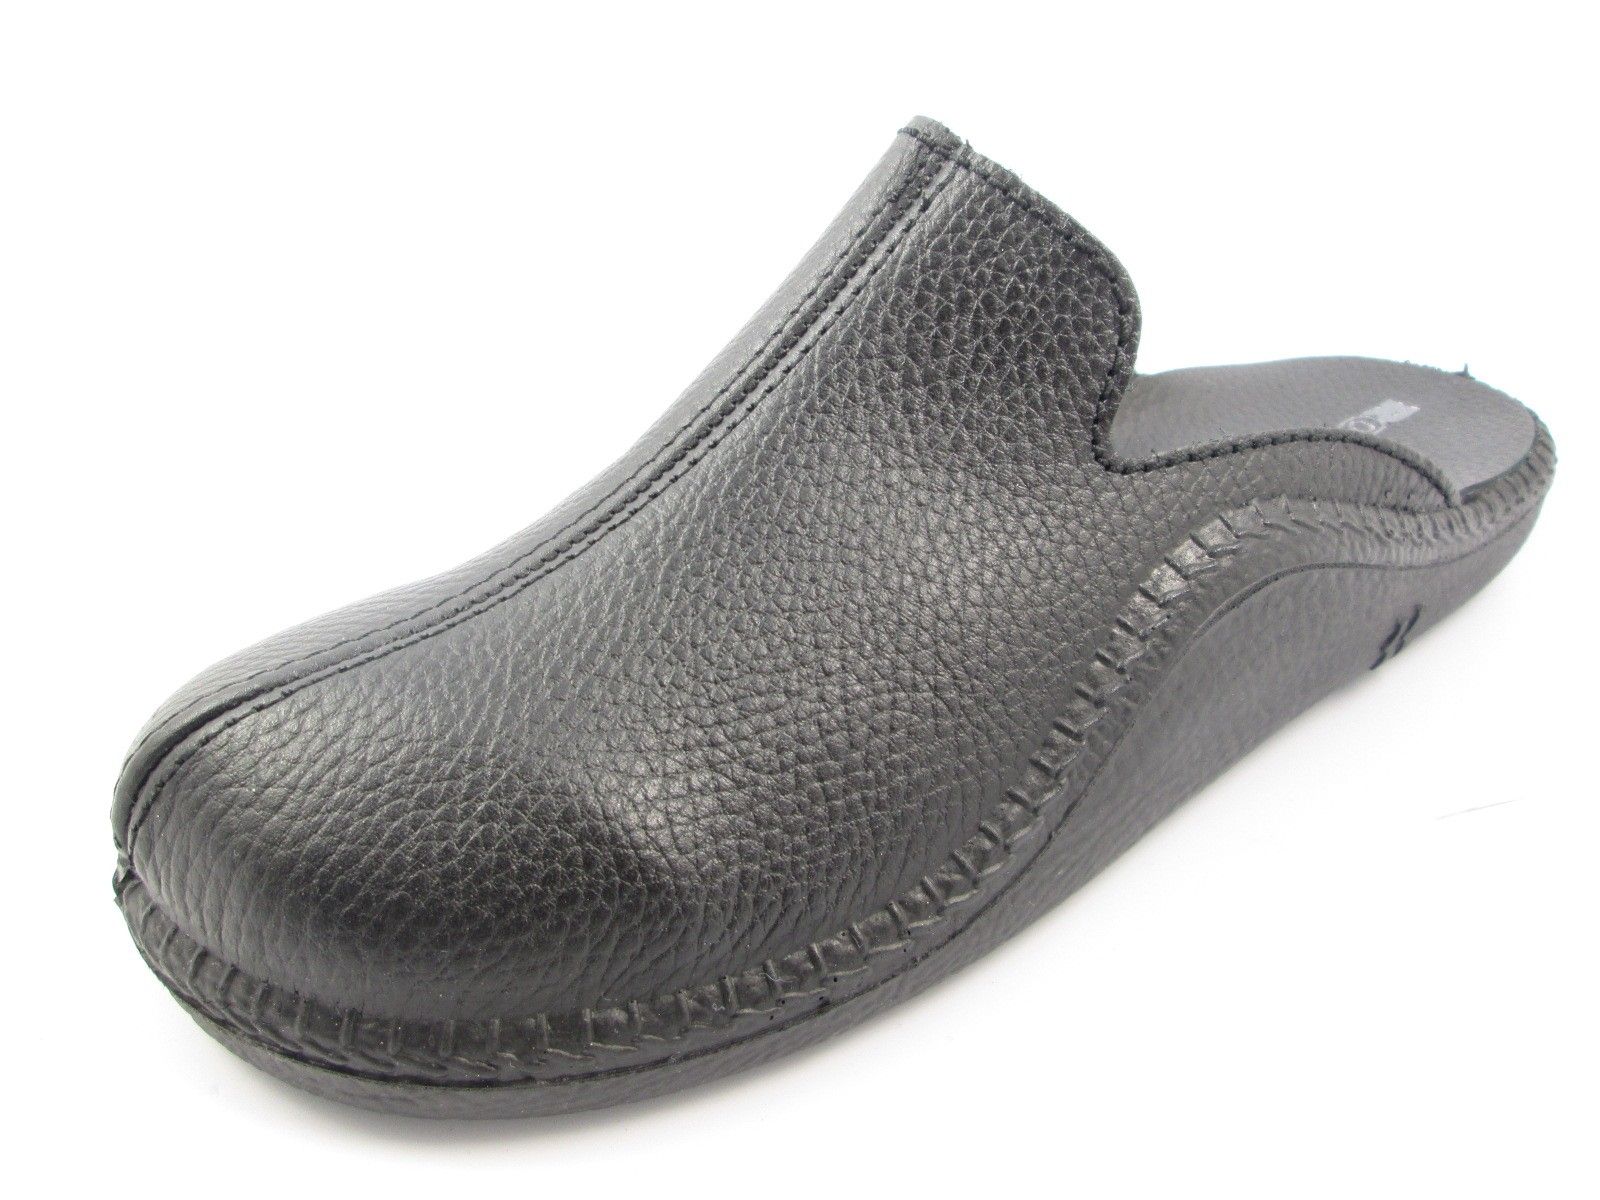 Schuh von Romika, 50